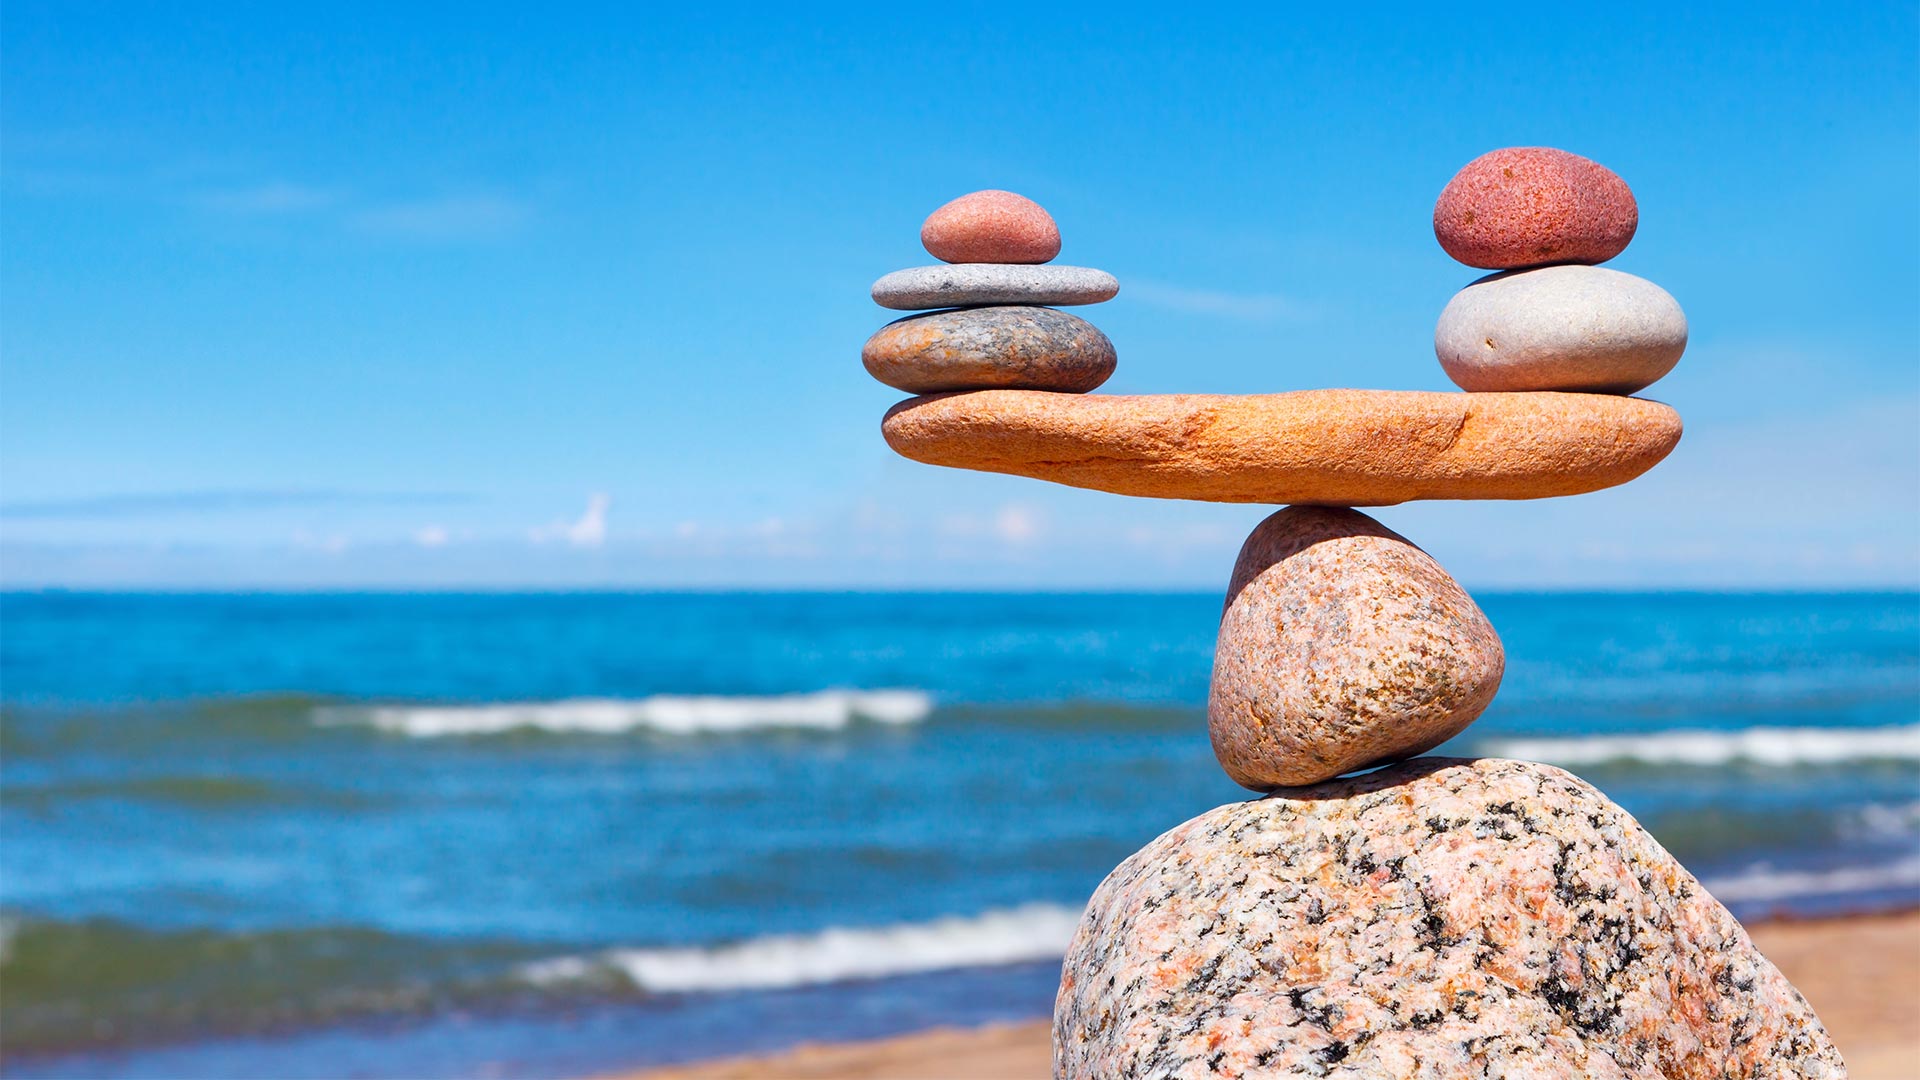 Stones balancing at beach